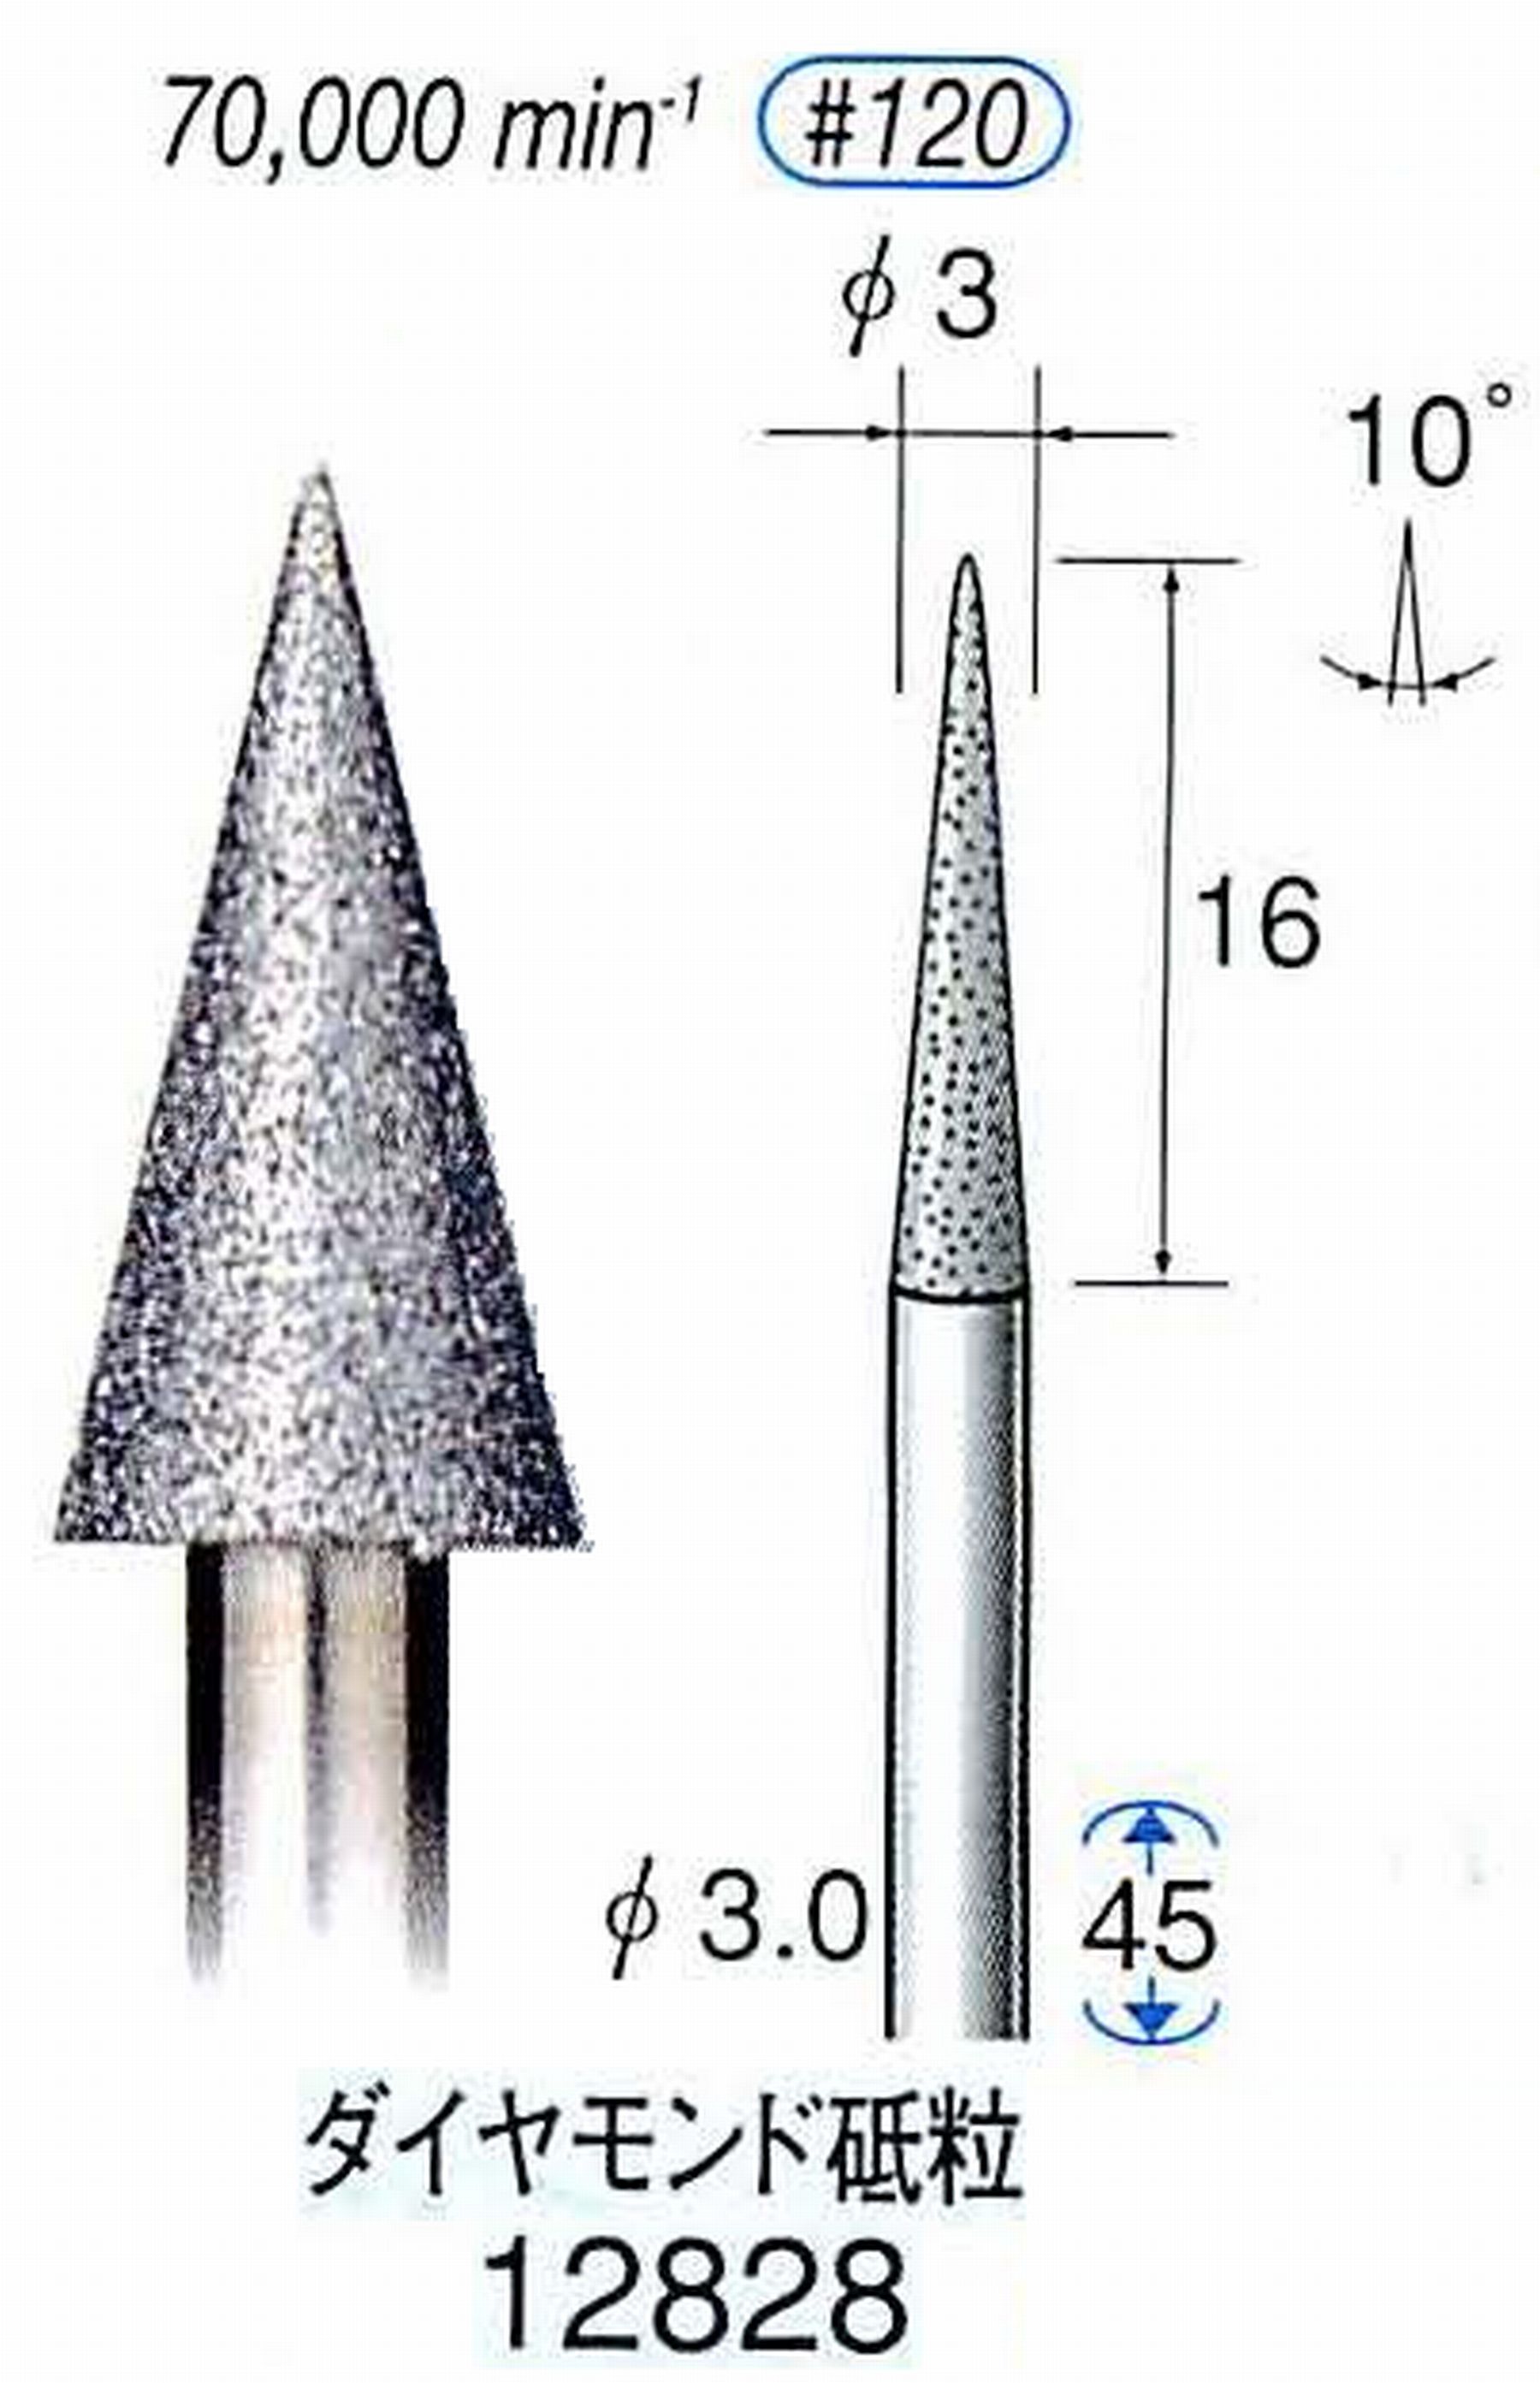 ナカニシ/NAKANISHI クラフト・ホビー用ダイヤモンドバー ダイヤモンド砥粒 軸径(シャンク)φ3.0mm 12828